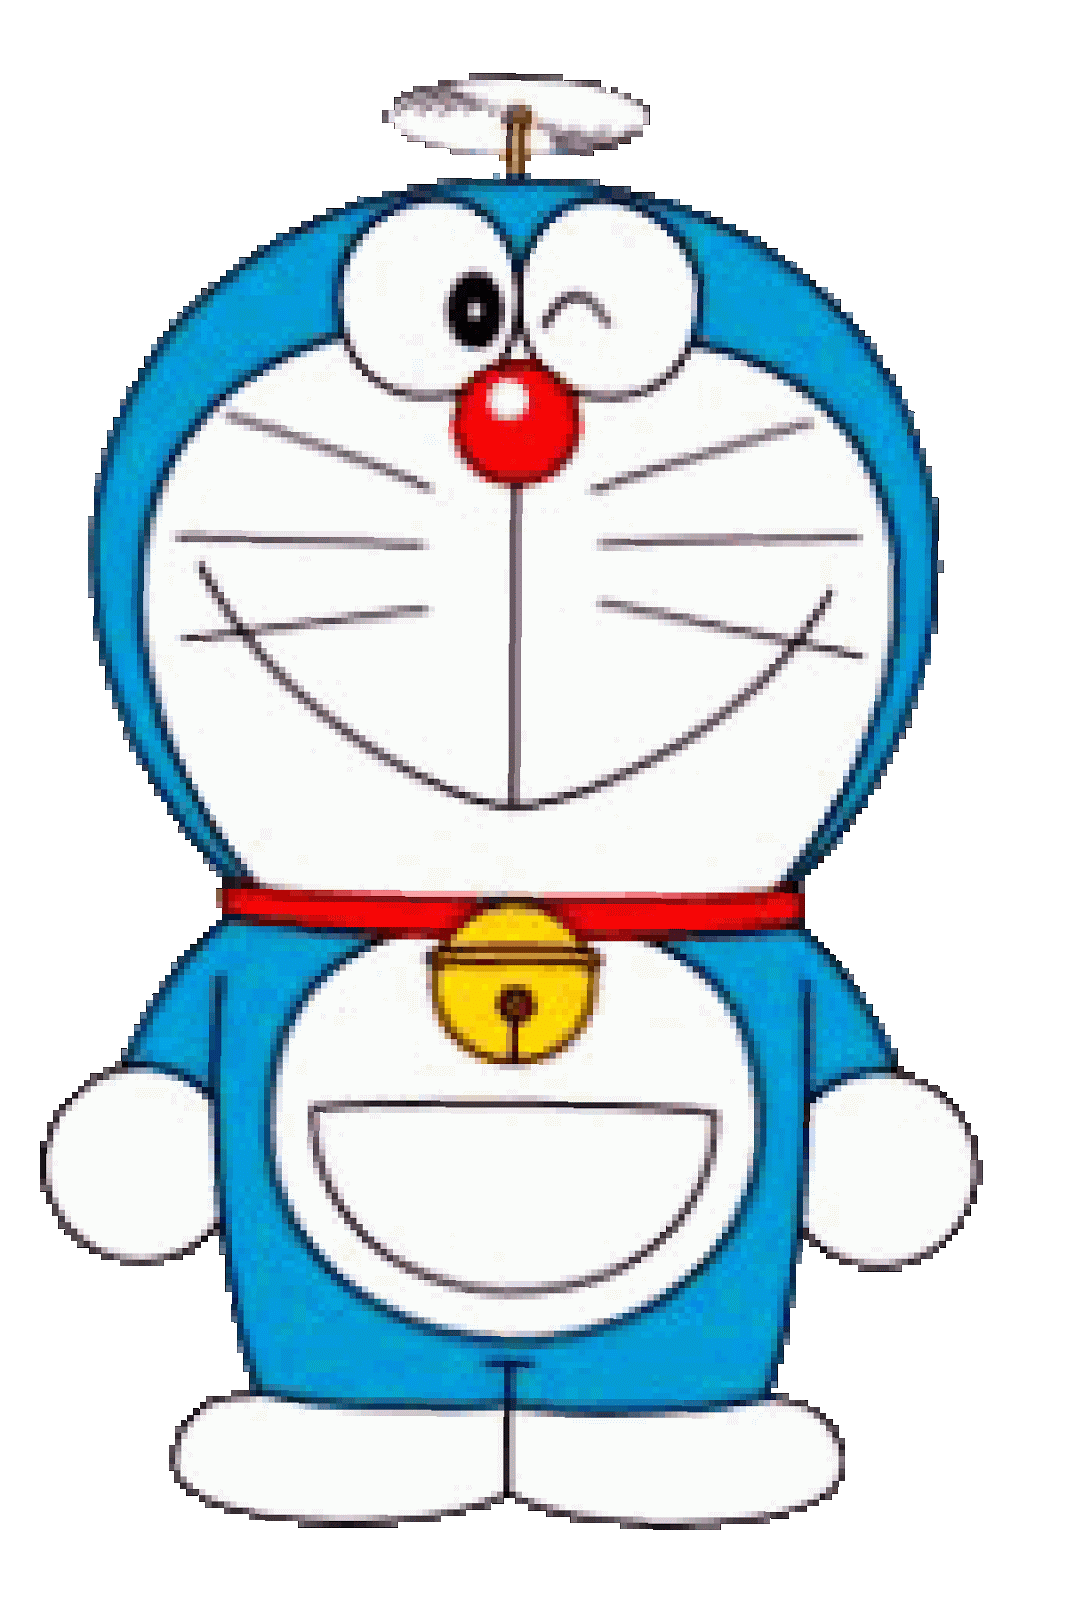 Gambar Animasi Doraemon Bergerak Lucu Terbaru Wallpaper Doraemon Animation 3d Gudang Wallpaper